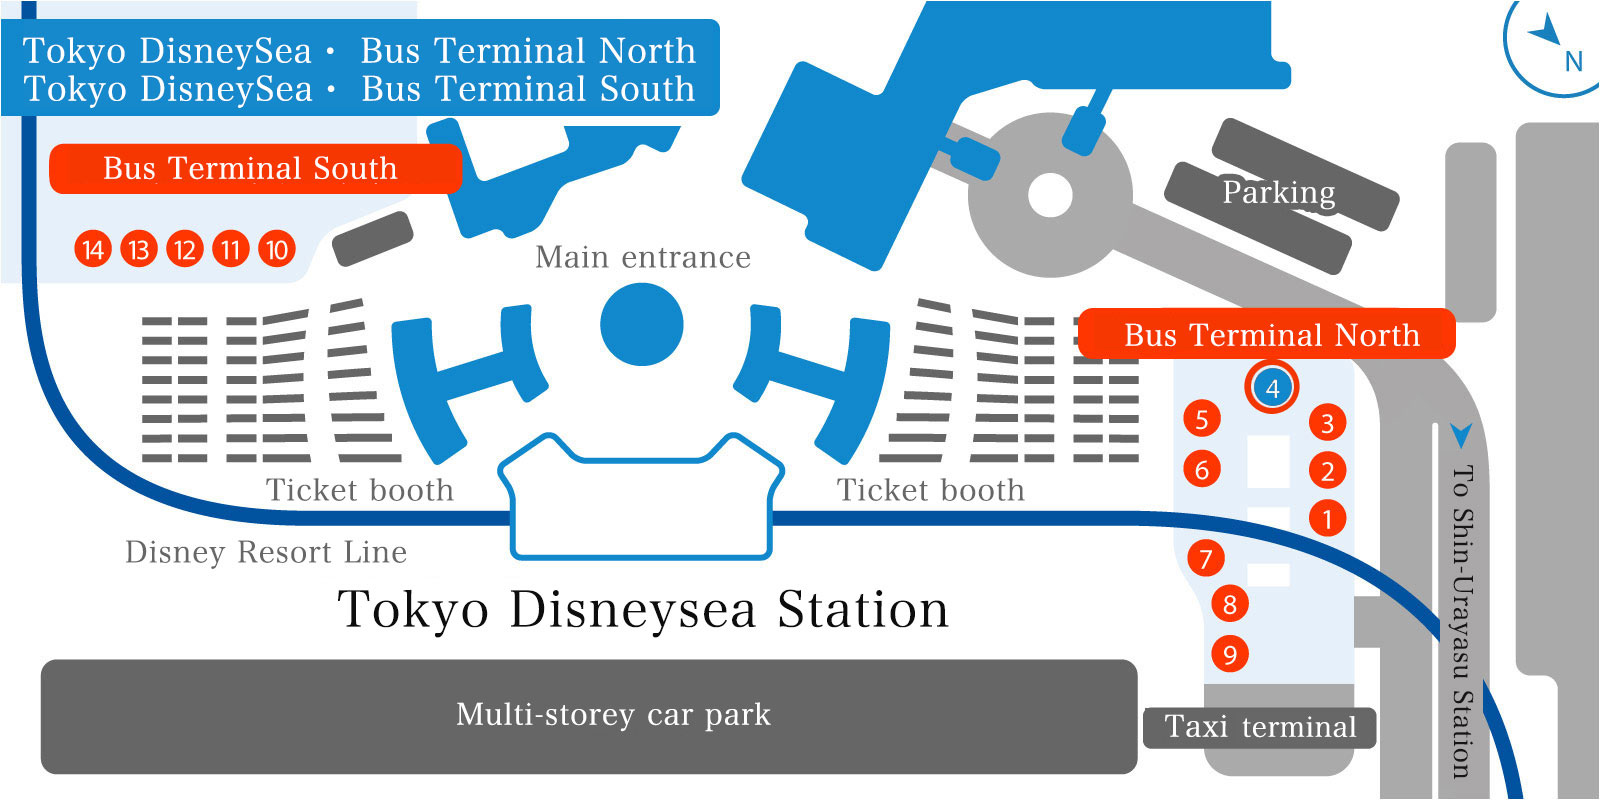 东京迪斯尼海洋乐园北巴士总站(4号乘车处)